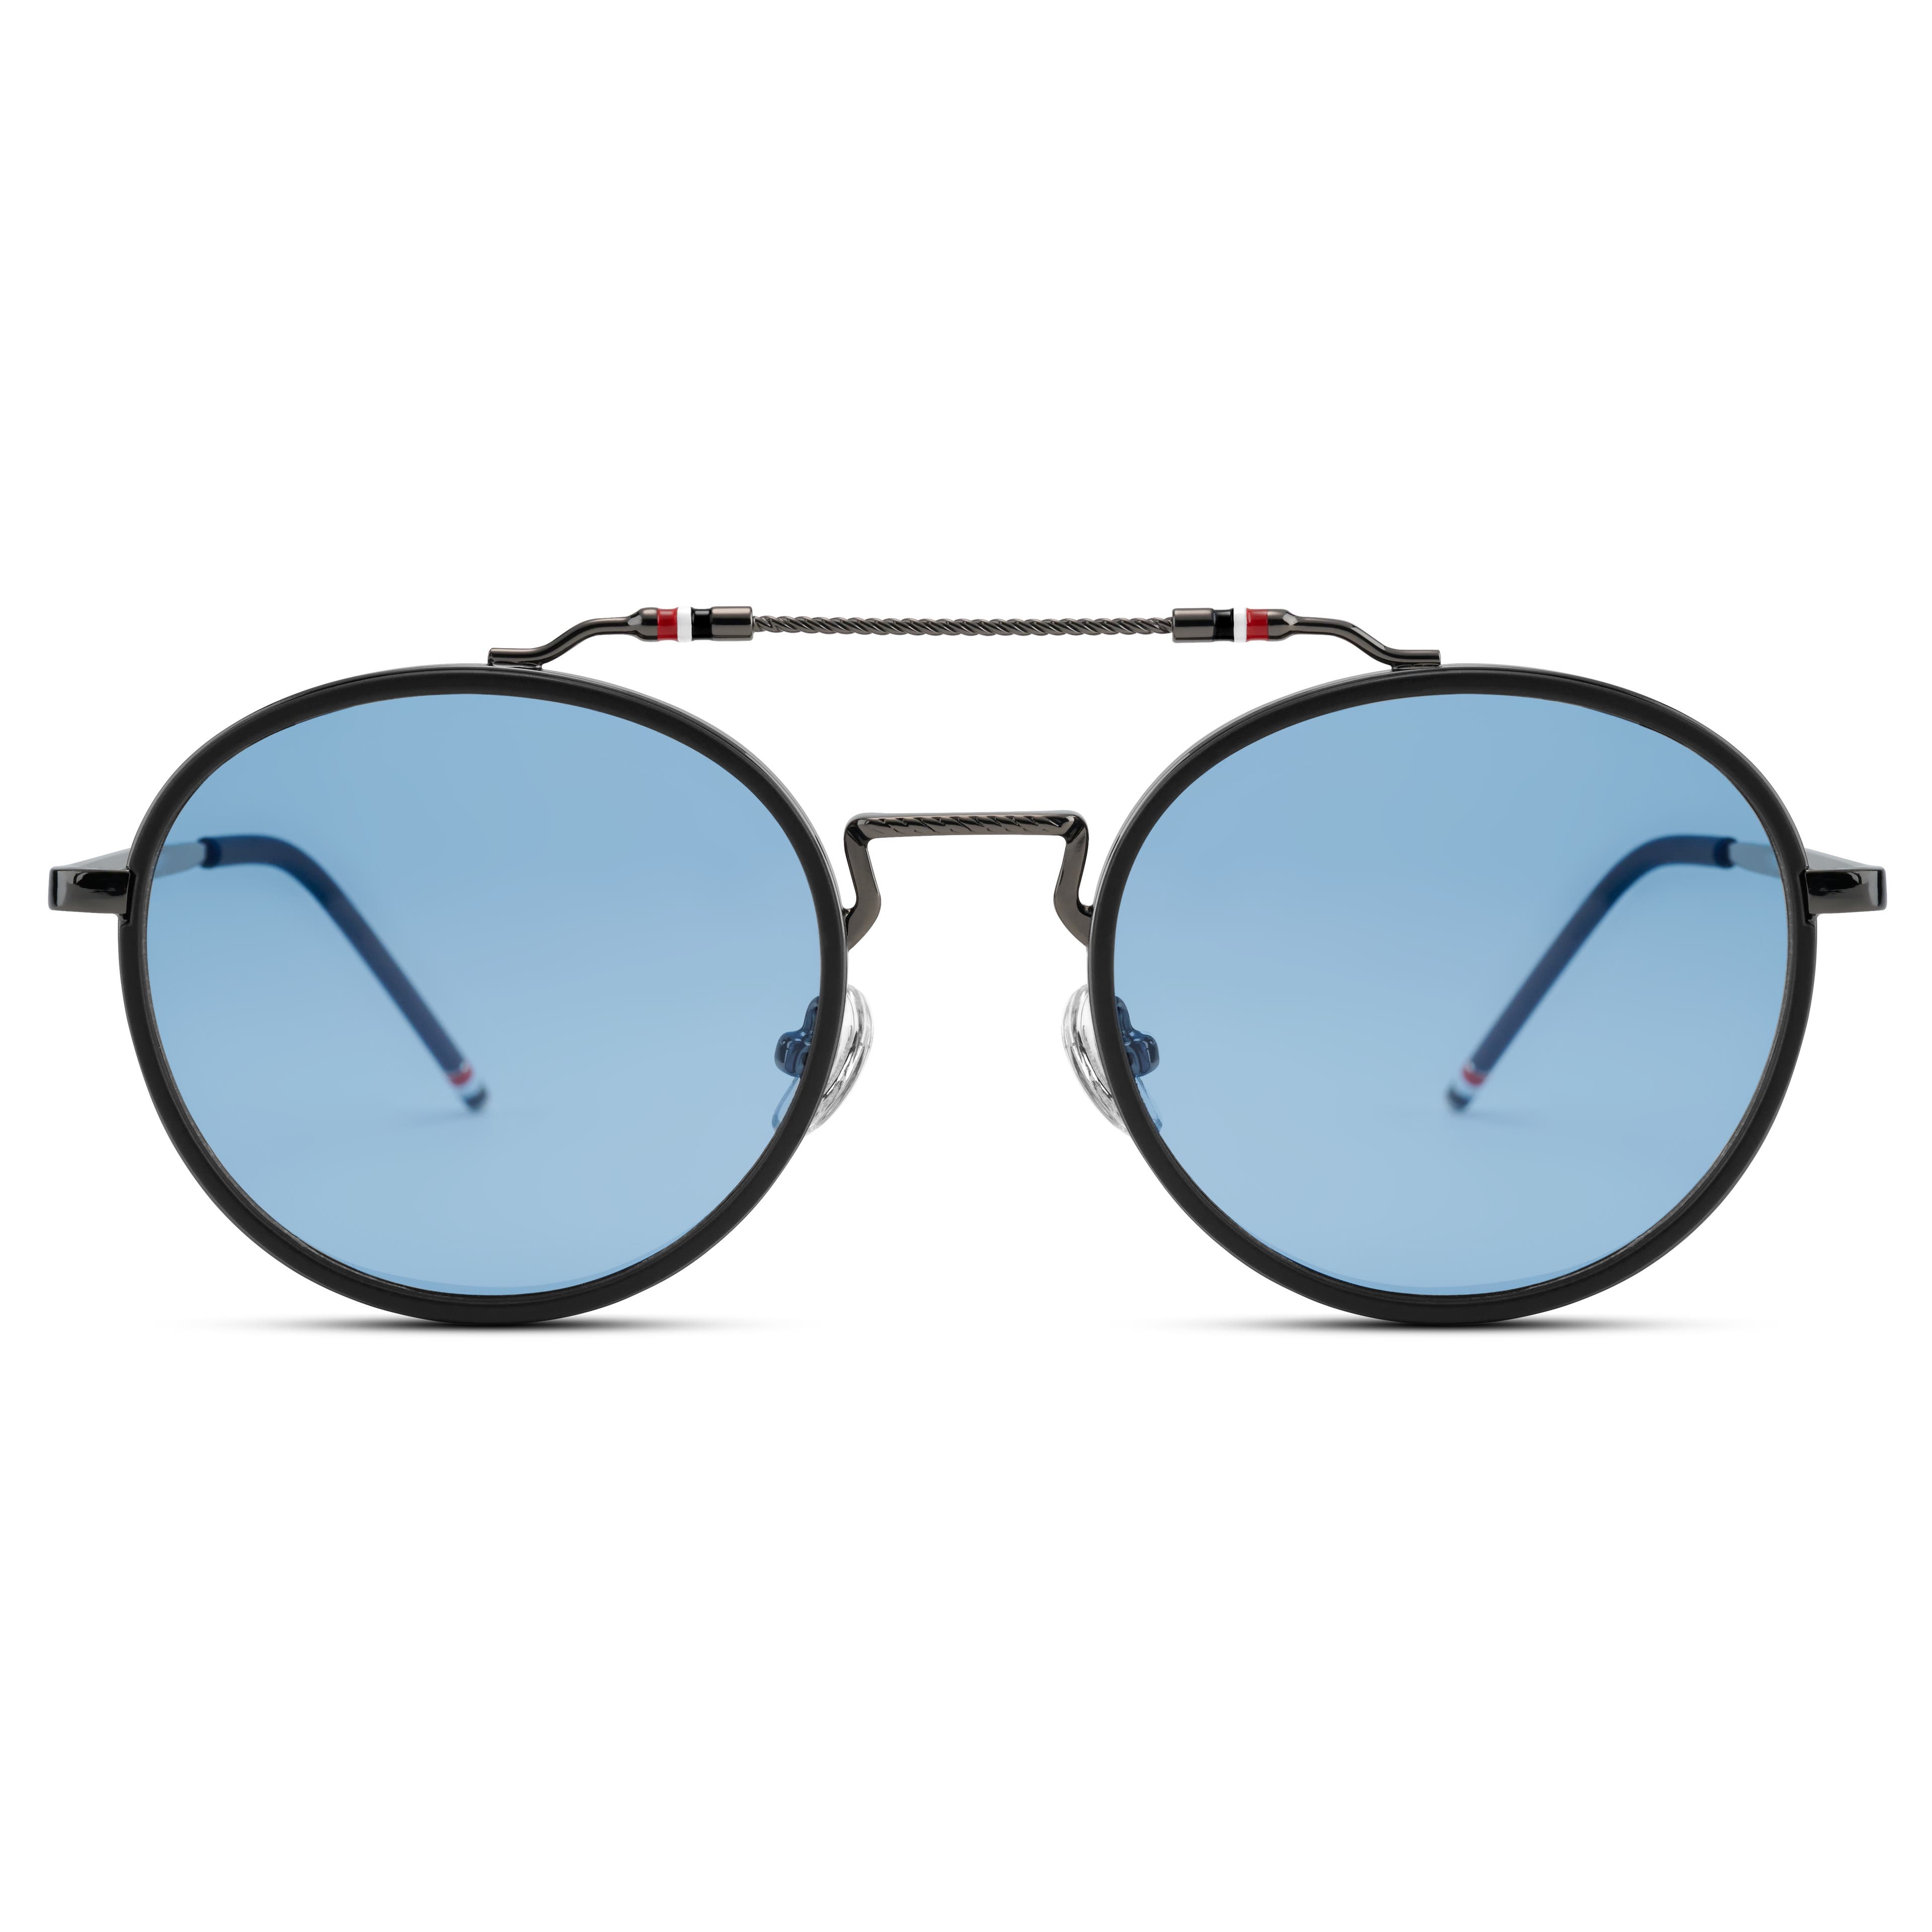 Occasus | Modré okrúhle polarizačné slnečné okuliare s dvojitým nosníkom